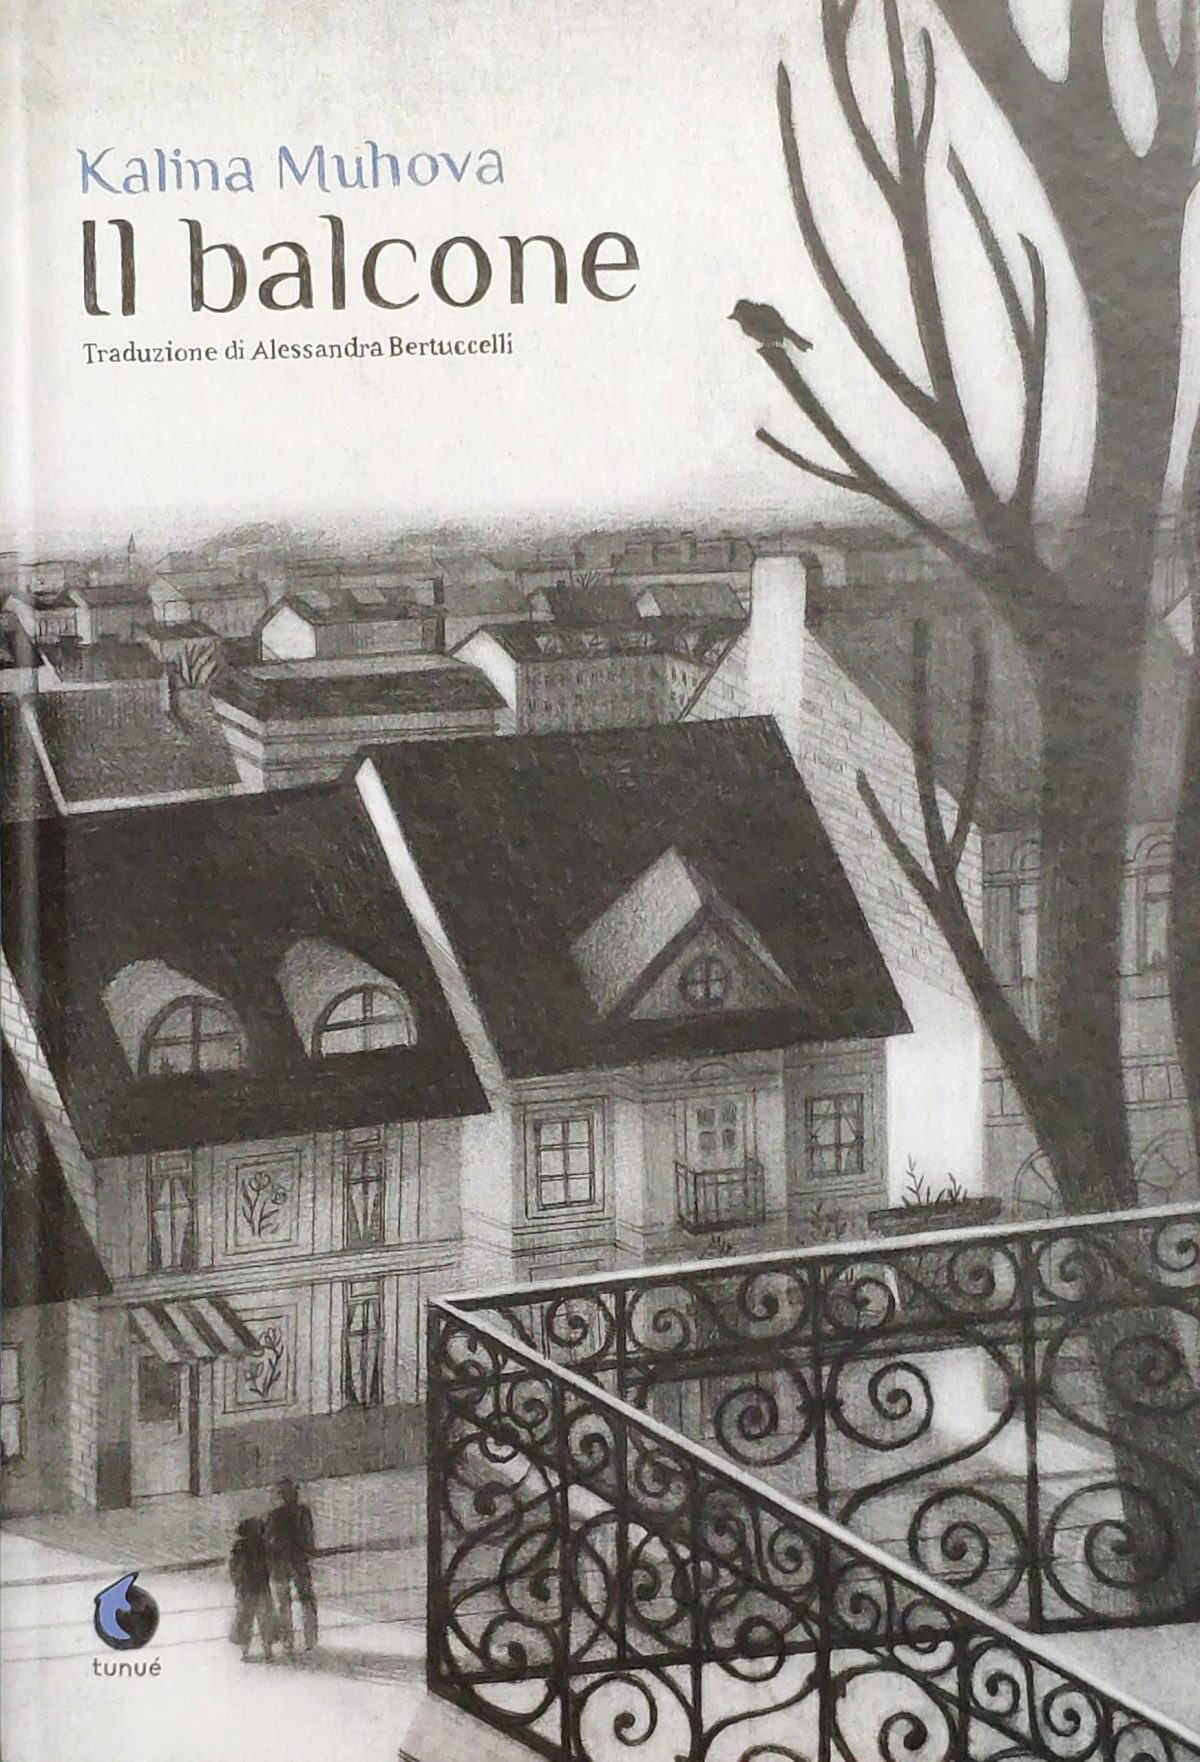 Mio caro fumetto... - Copertina de Il balcone di Kalina Muhova, pubblicato da Tunué